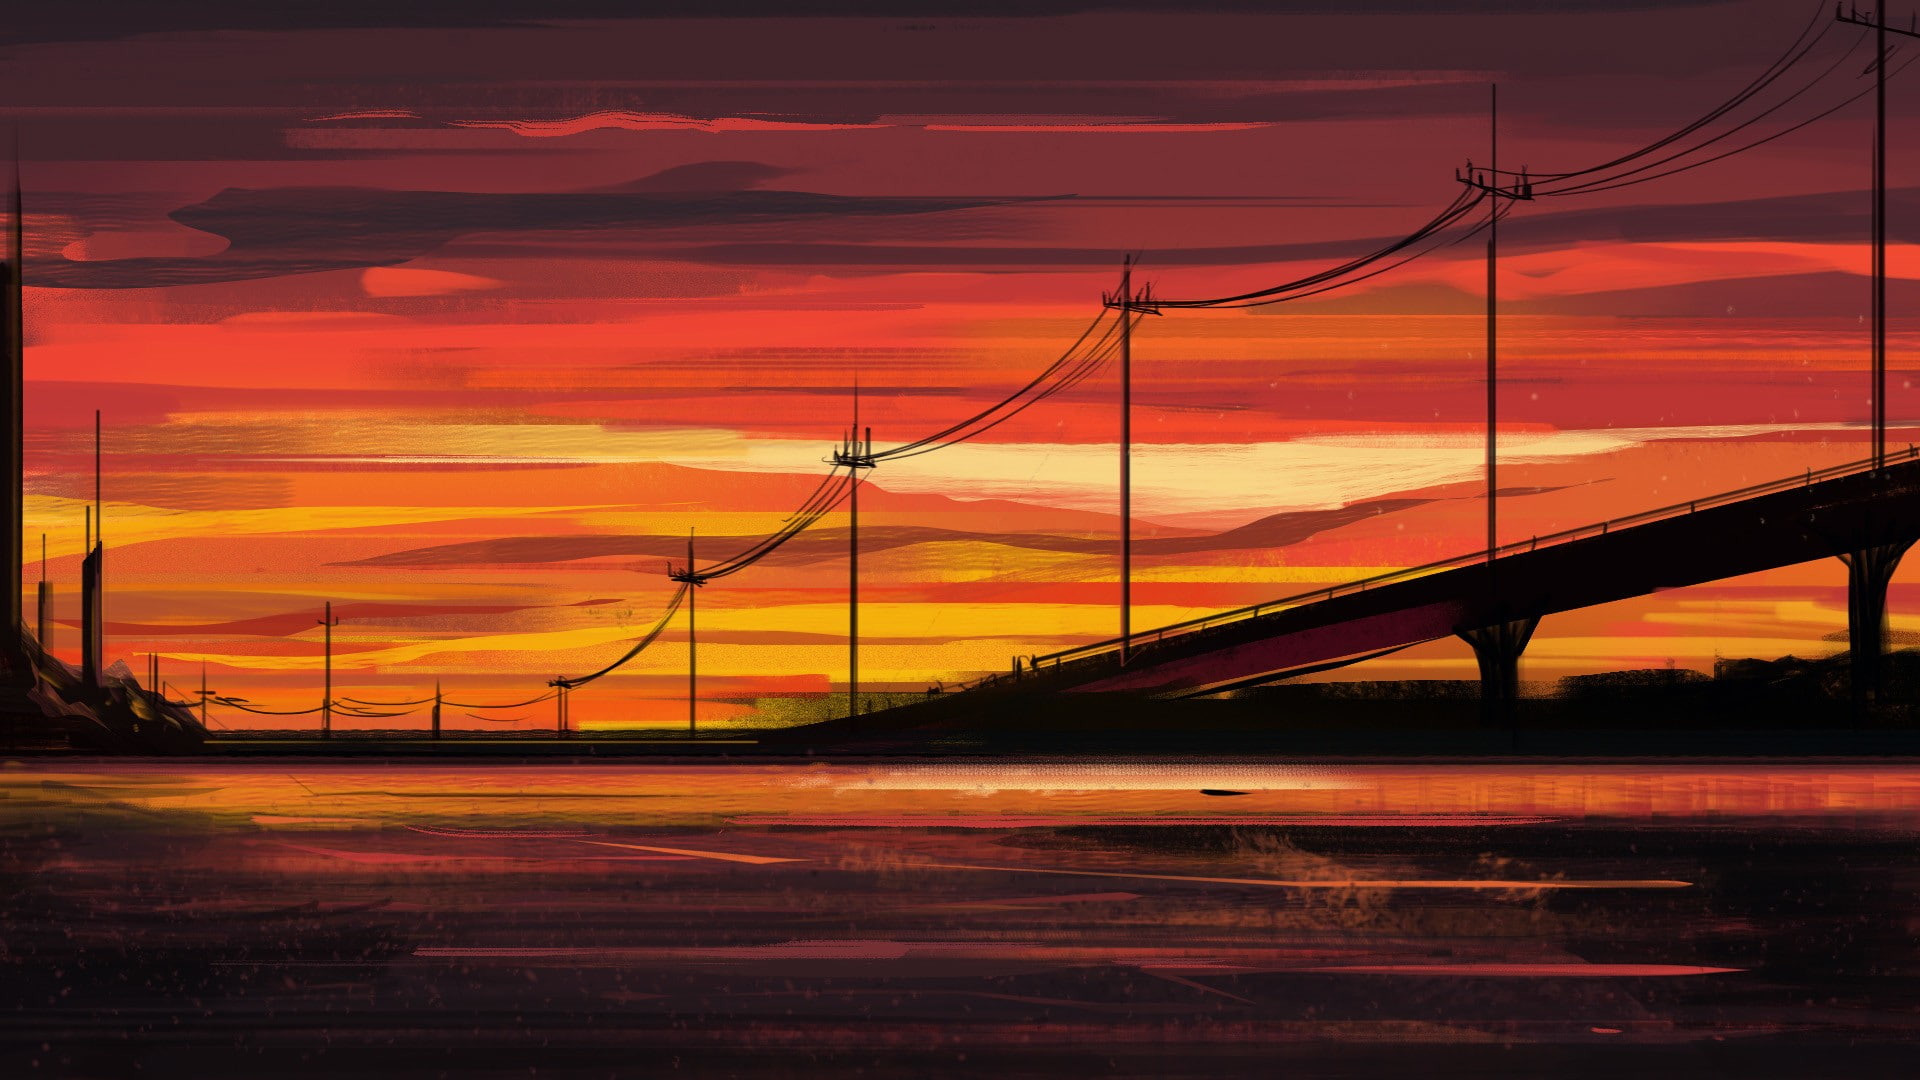 artwork, illustration, sunset, orange color, sky, connection